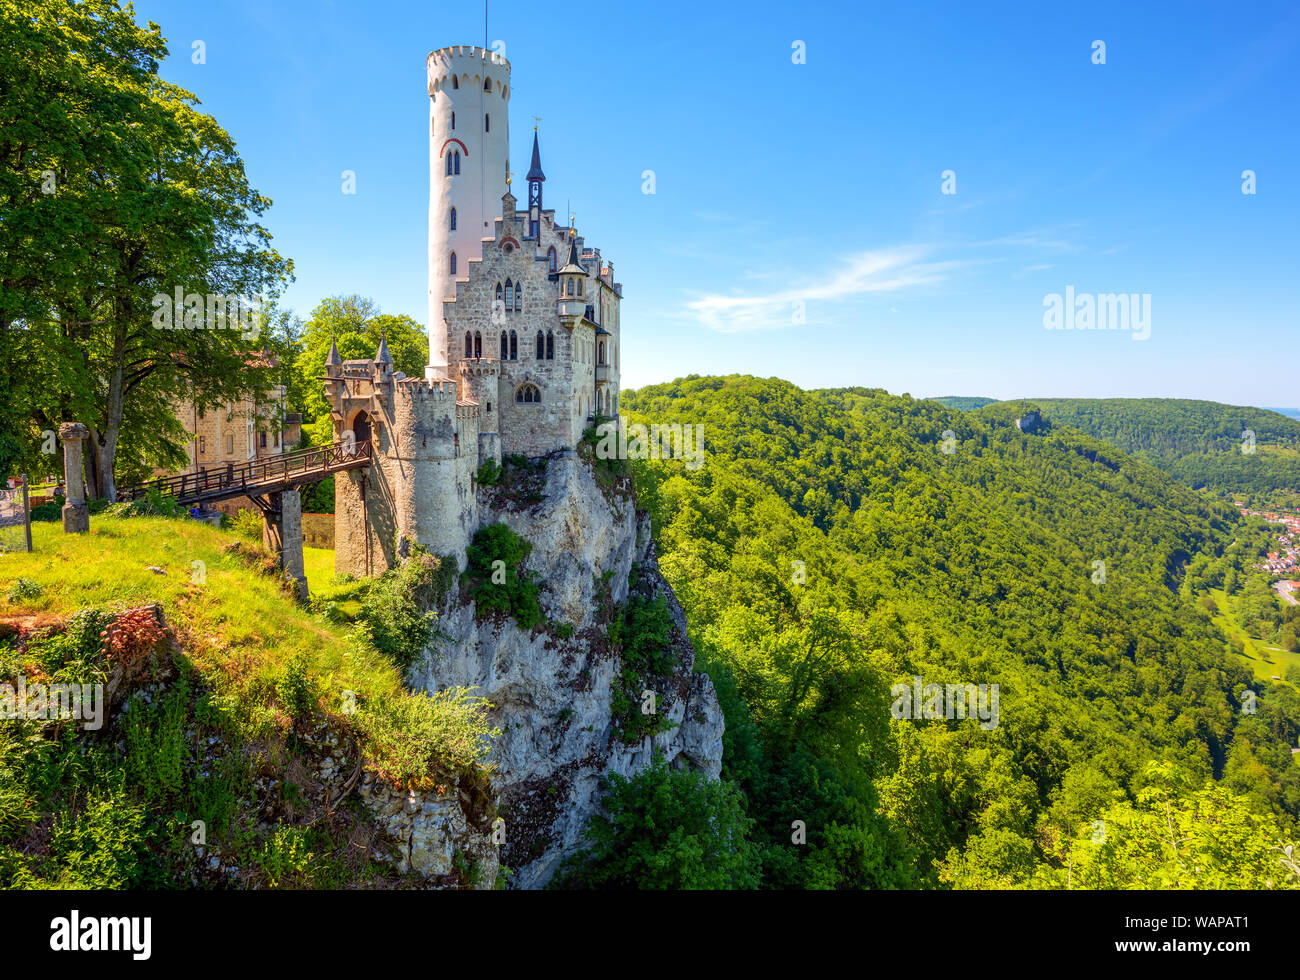 Schloss Lichtenstein in Schwarzwald, Deutschland, im romantischen gotischen Stil erbaut und wie ein Märchenschloss von Württemberg bekannt, ist einer der am meisten BEAUT Stockfoto